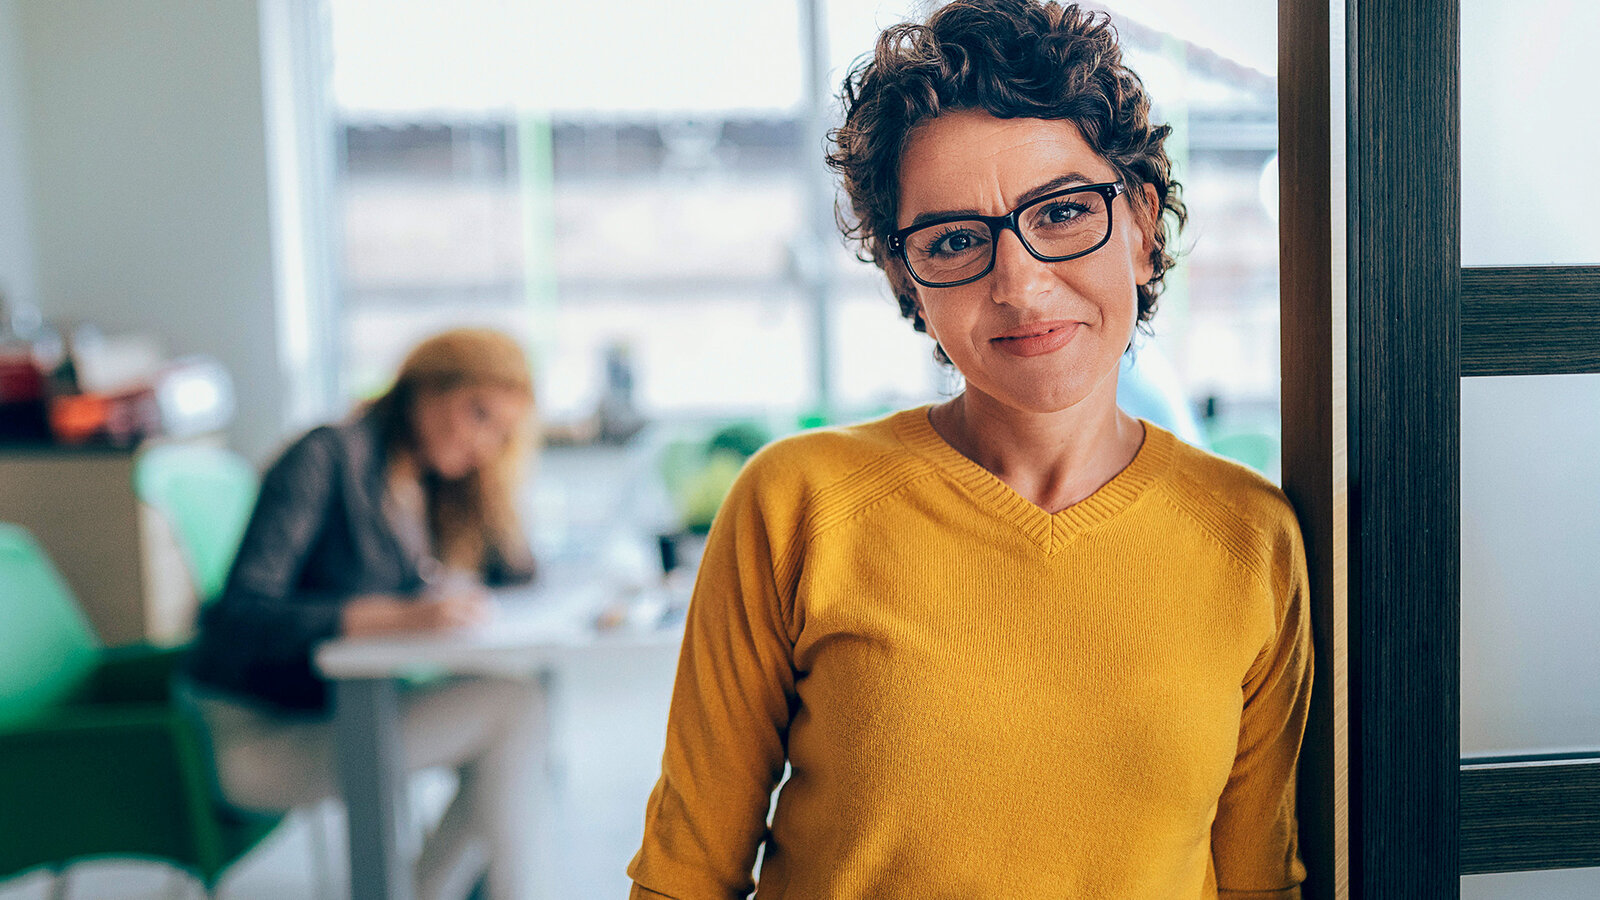 Bild zeigt Frau in gelbem Pullover, die im Büro an einen Türrahmen gelehnt, lächelnd in die Kamera schaut, freut sich über das Angebot Mehrleistungen.